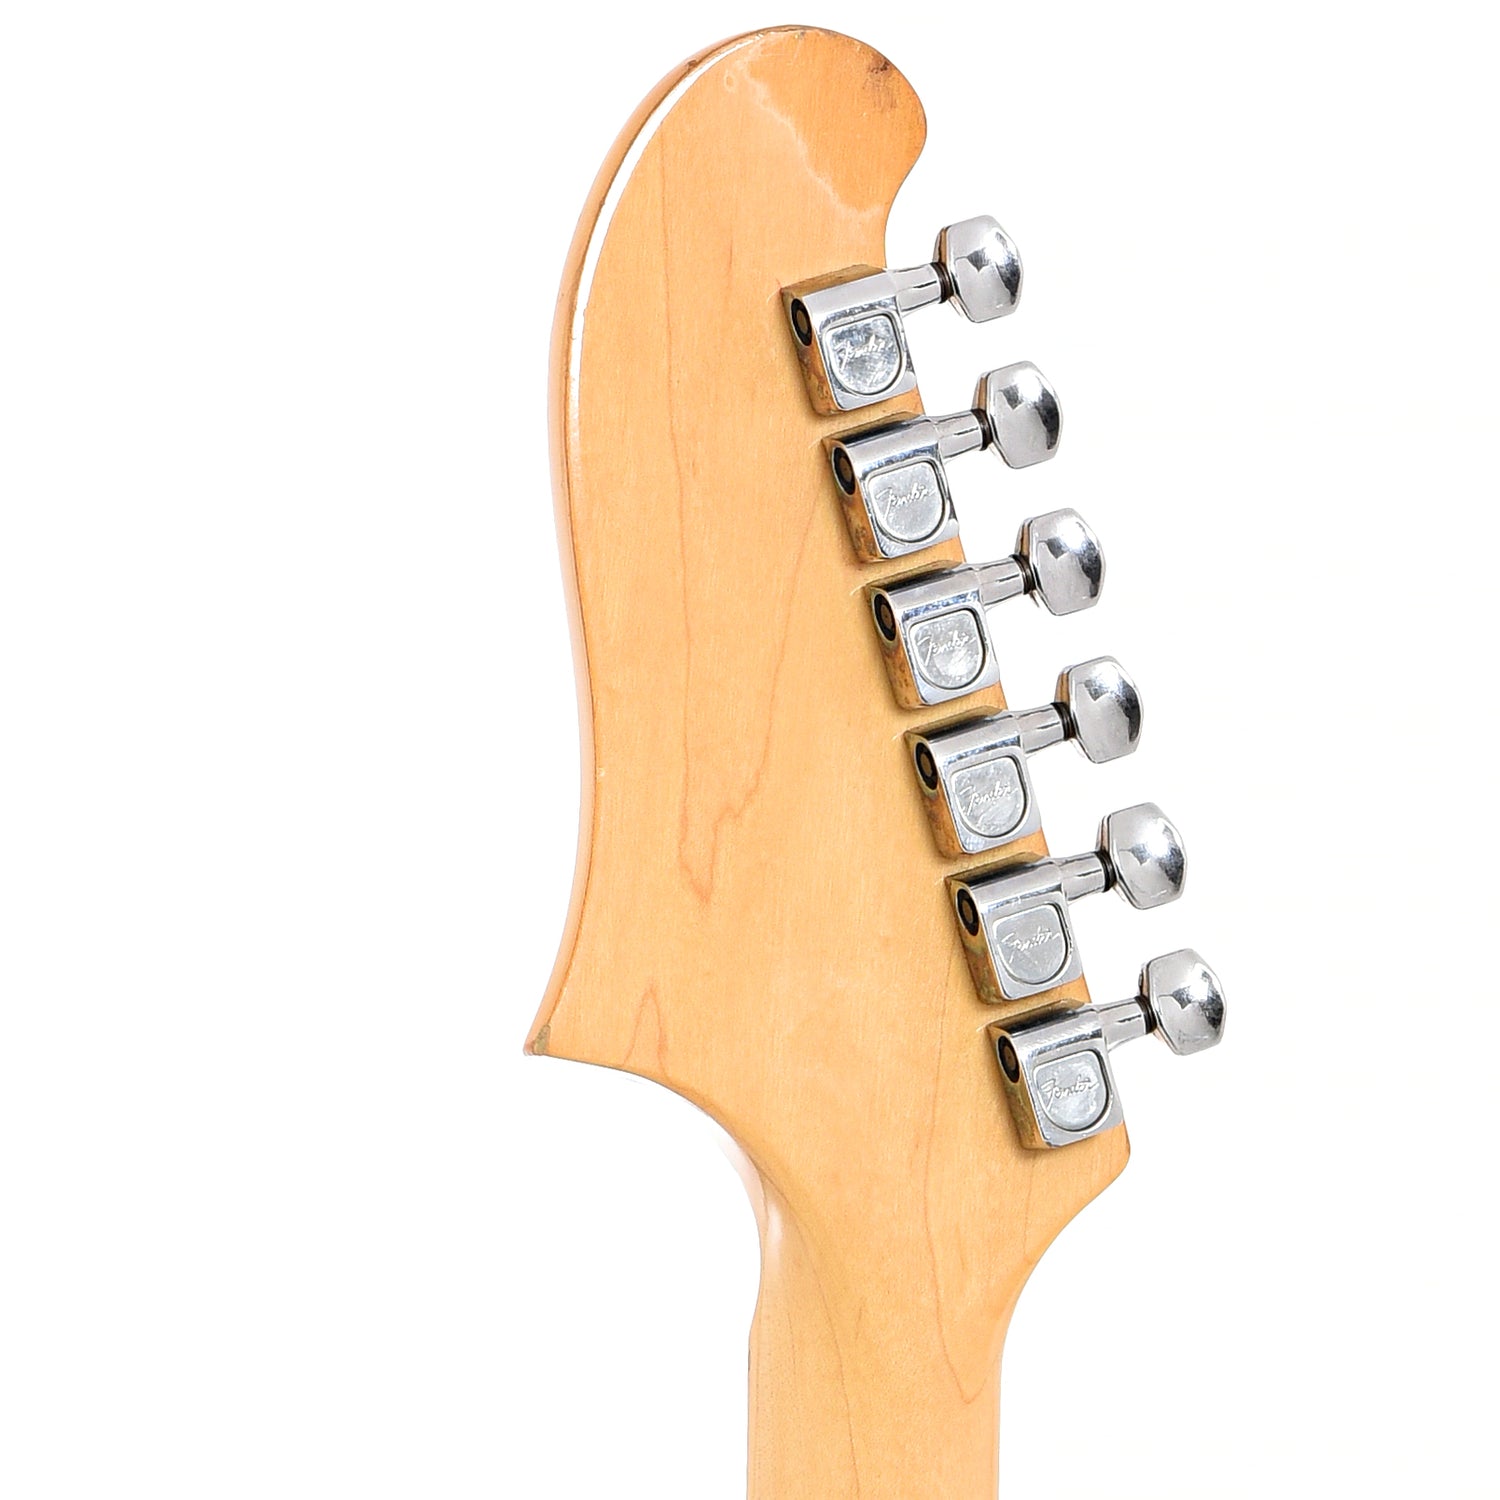 Back headstock of Fender Starcaster